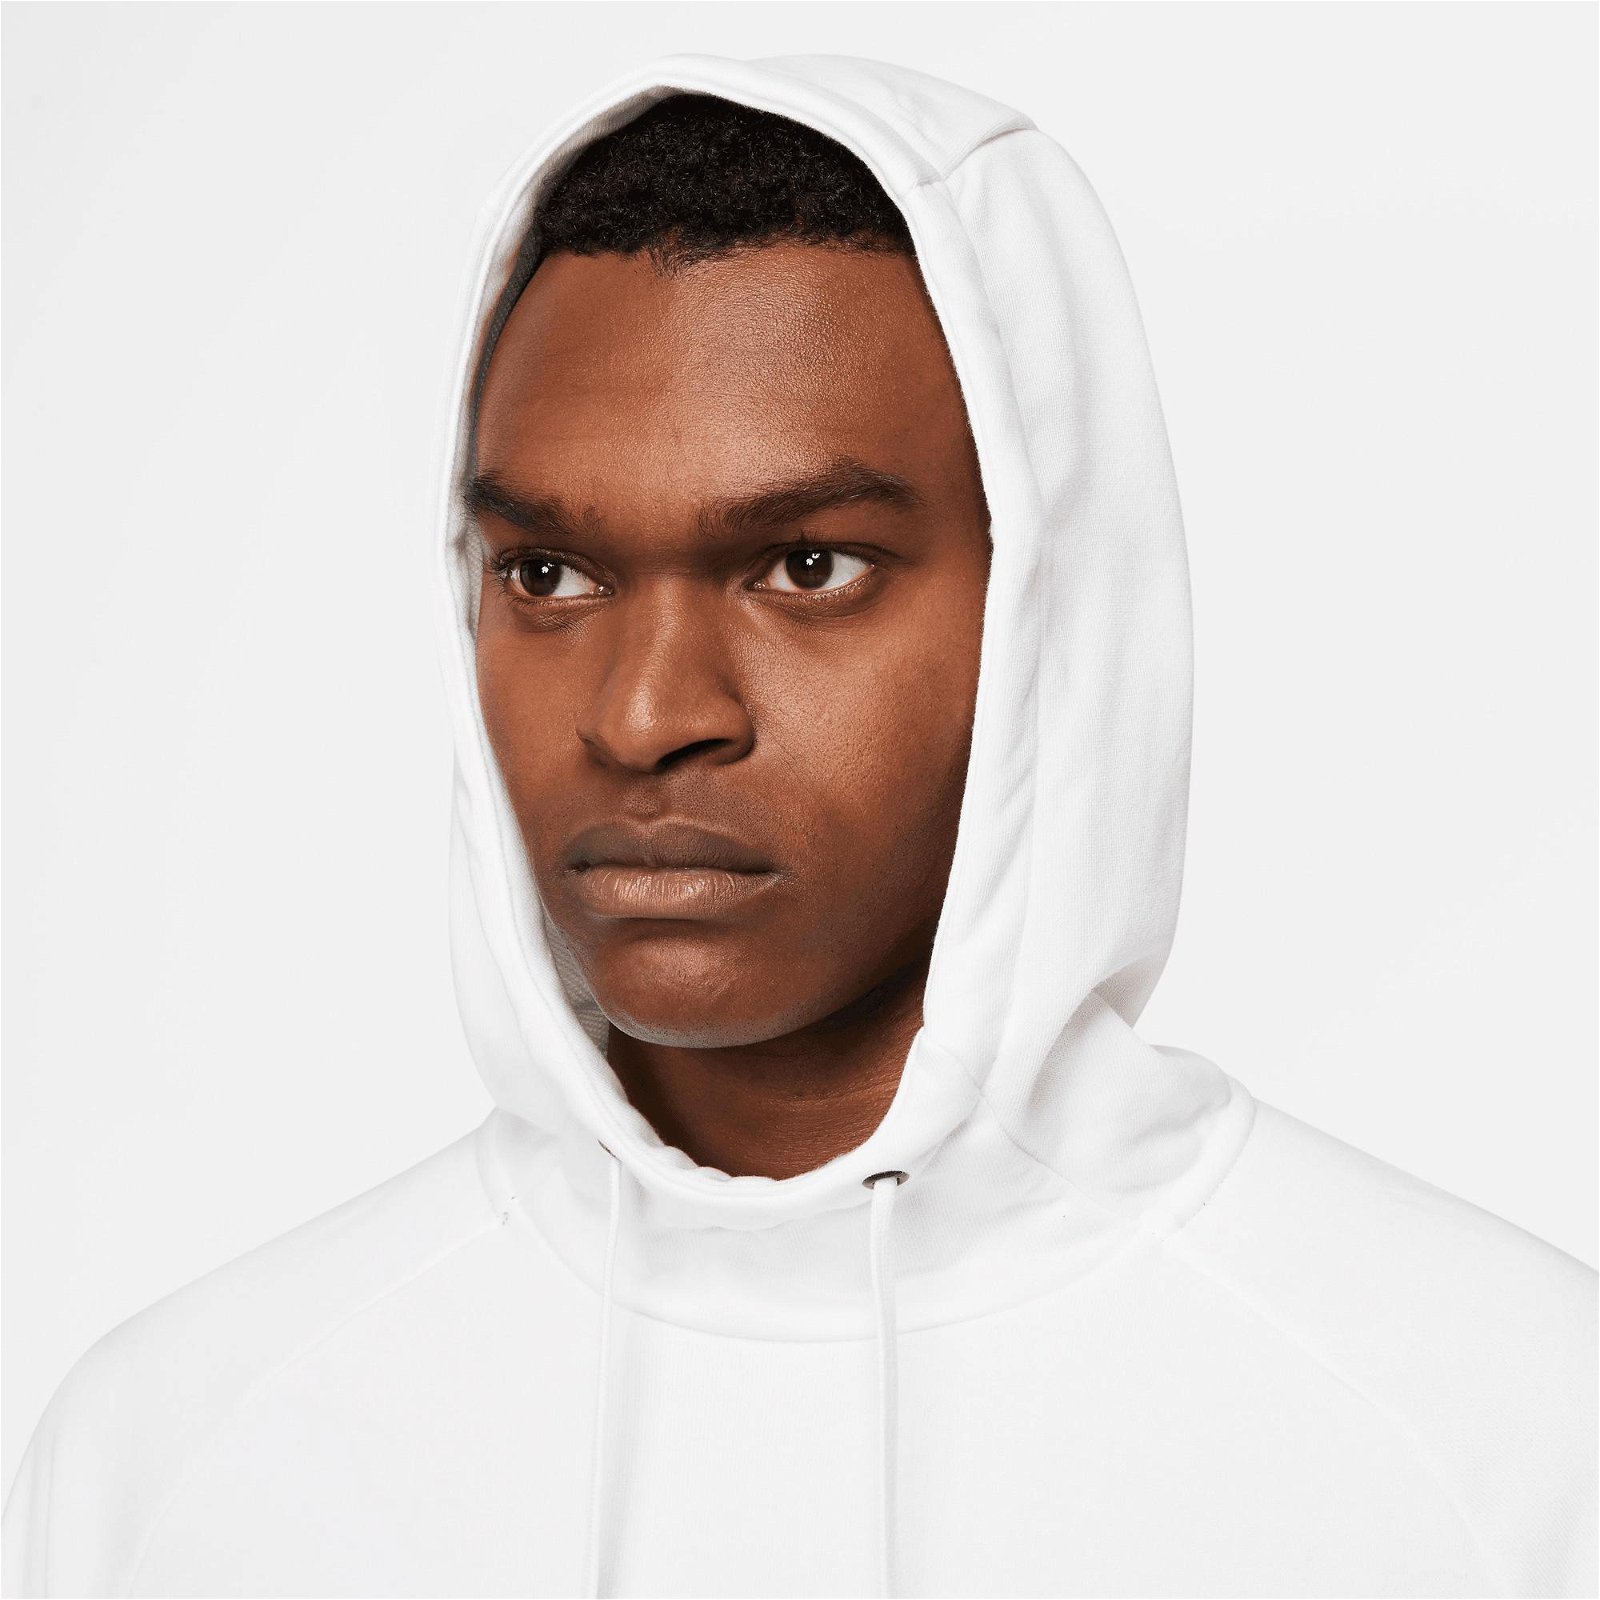 Nike Dri-FIT Hoodie Swoosh Erkek Beyaz Sweatshirt